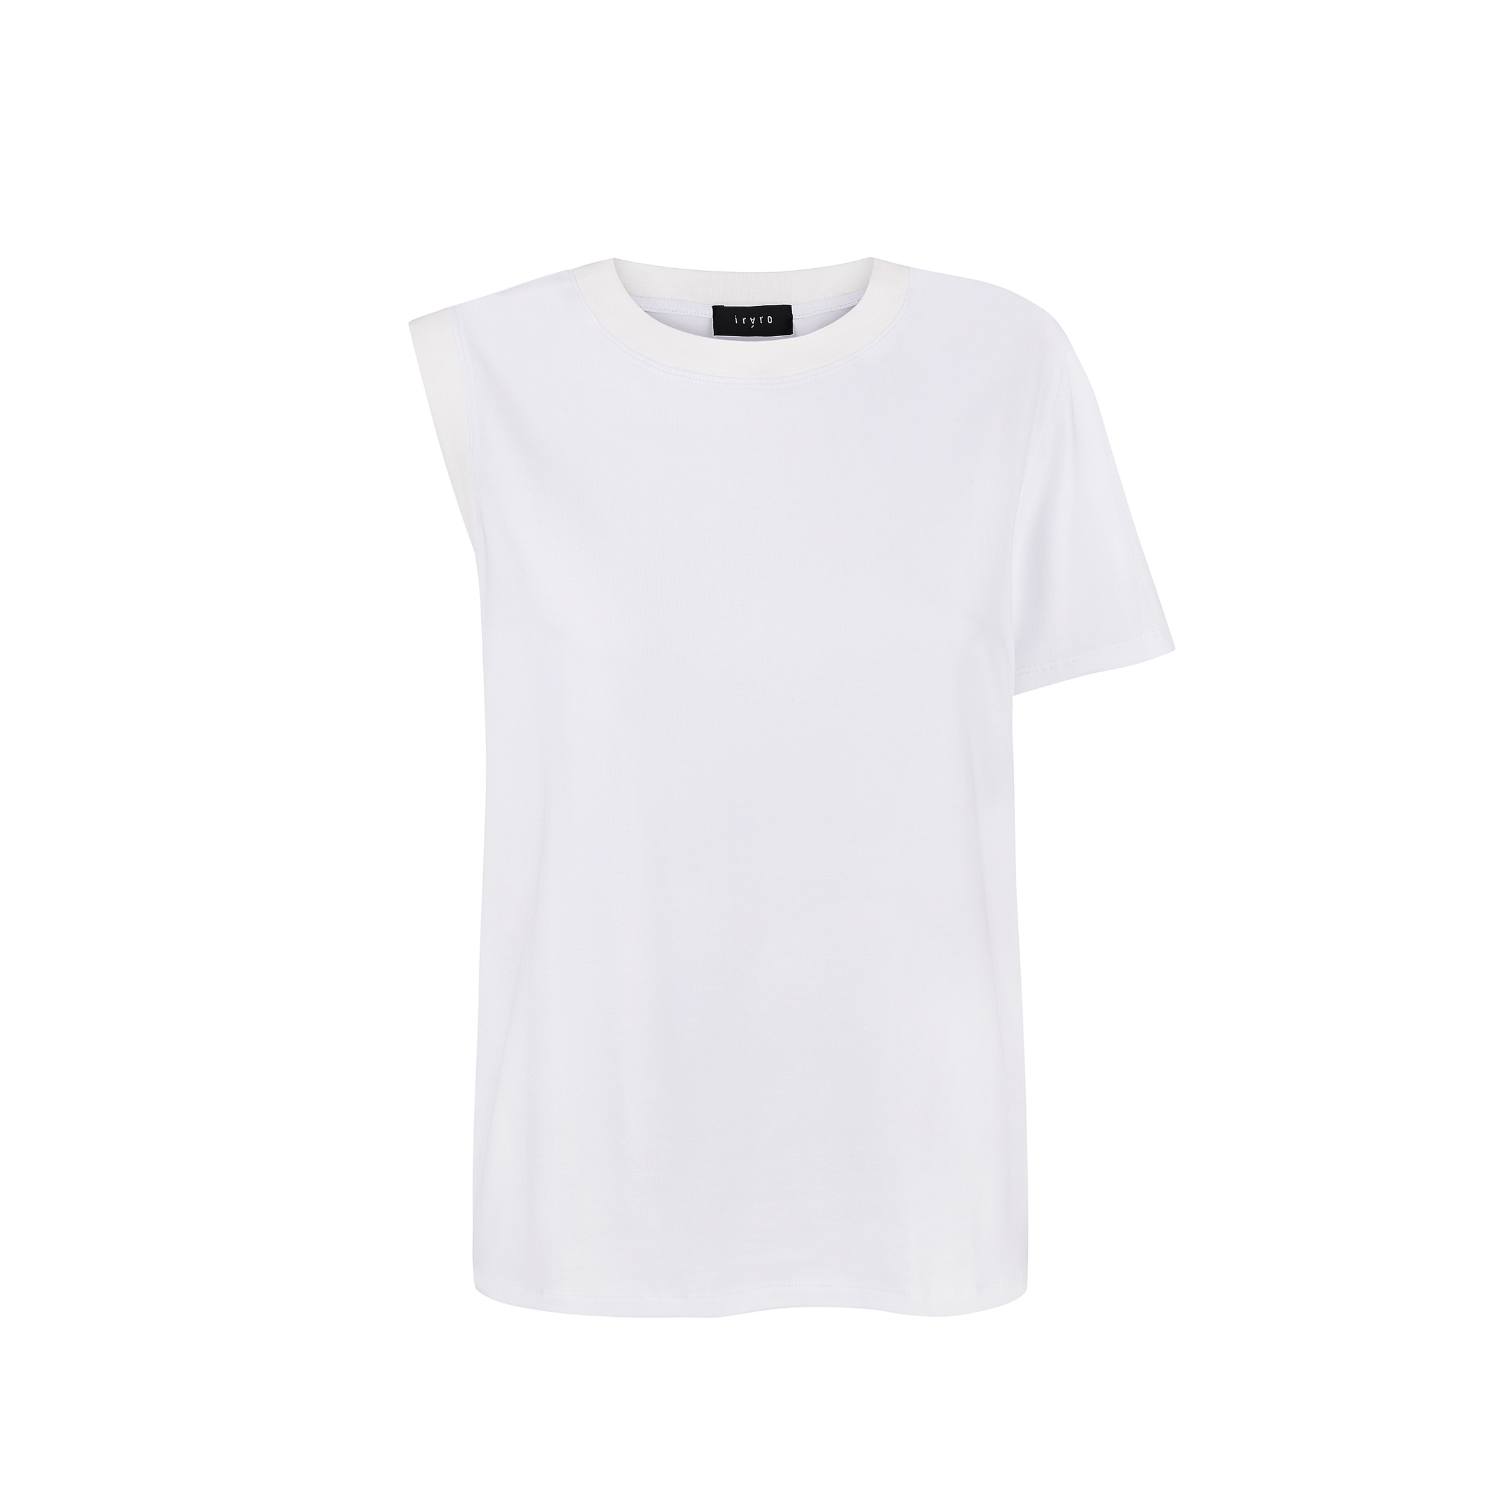 Iráro Women's Round Neck T-shirt - White